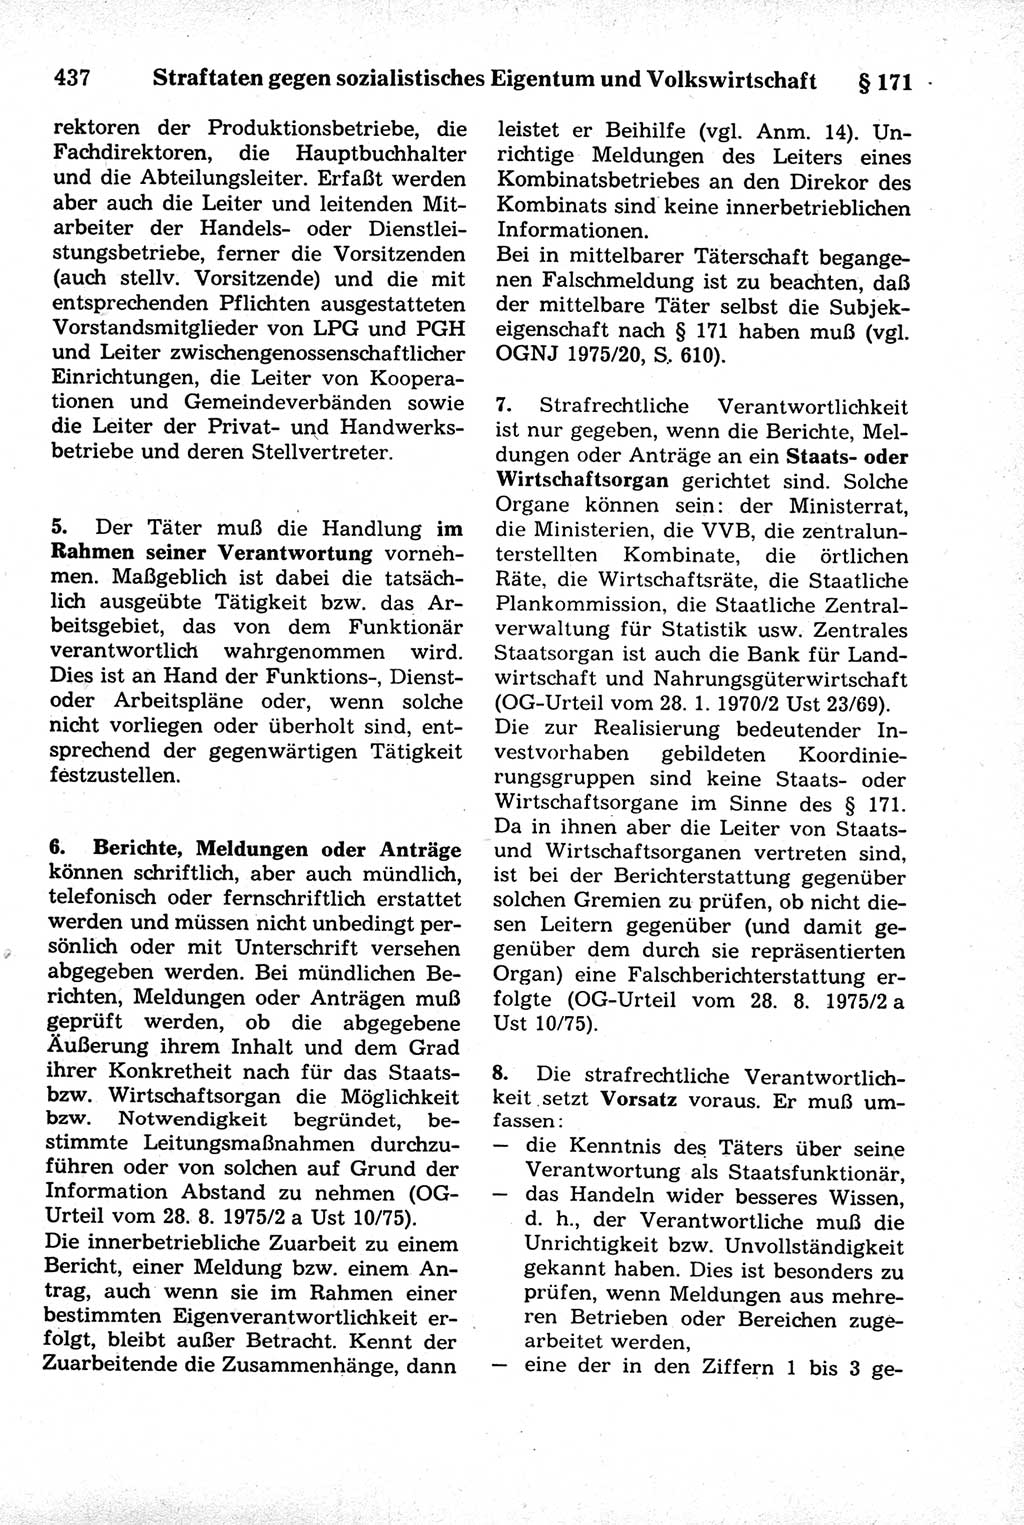 Strafrecht der Deutschen Demokratischen Republik (DDR), Kommentar zum Strafgesetzbuch (StGB) 1981, Seite 437 (Strafr. DDR Komm. StGB 1981, S. 437)